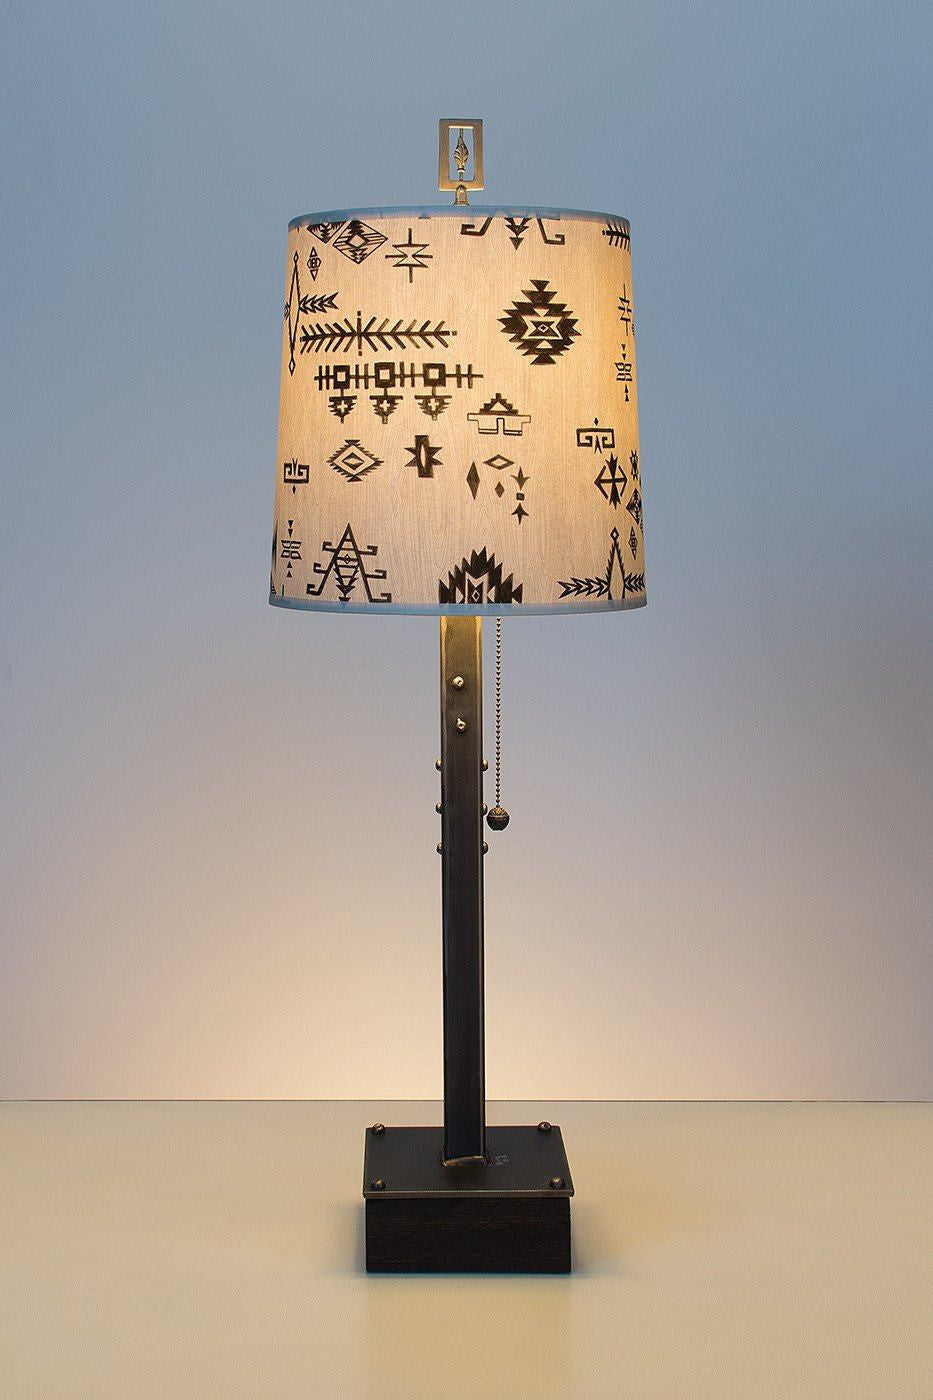 Steel Table Lamp on Wood with Medium Drum Shade in Blanket Sketch